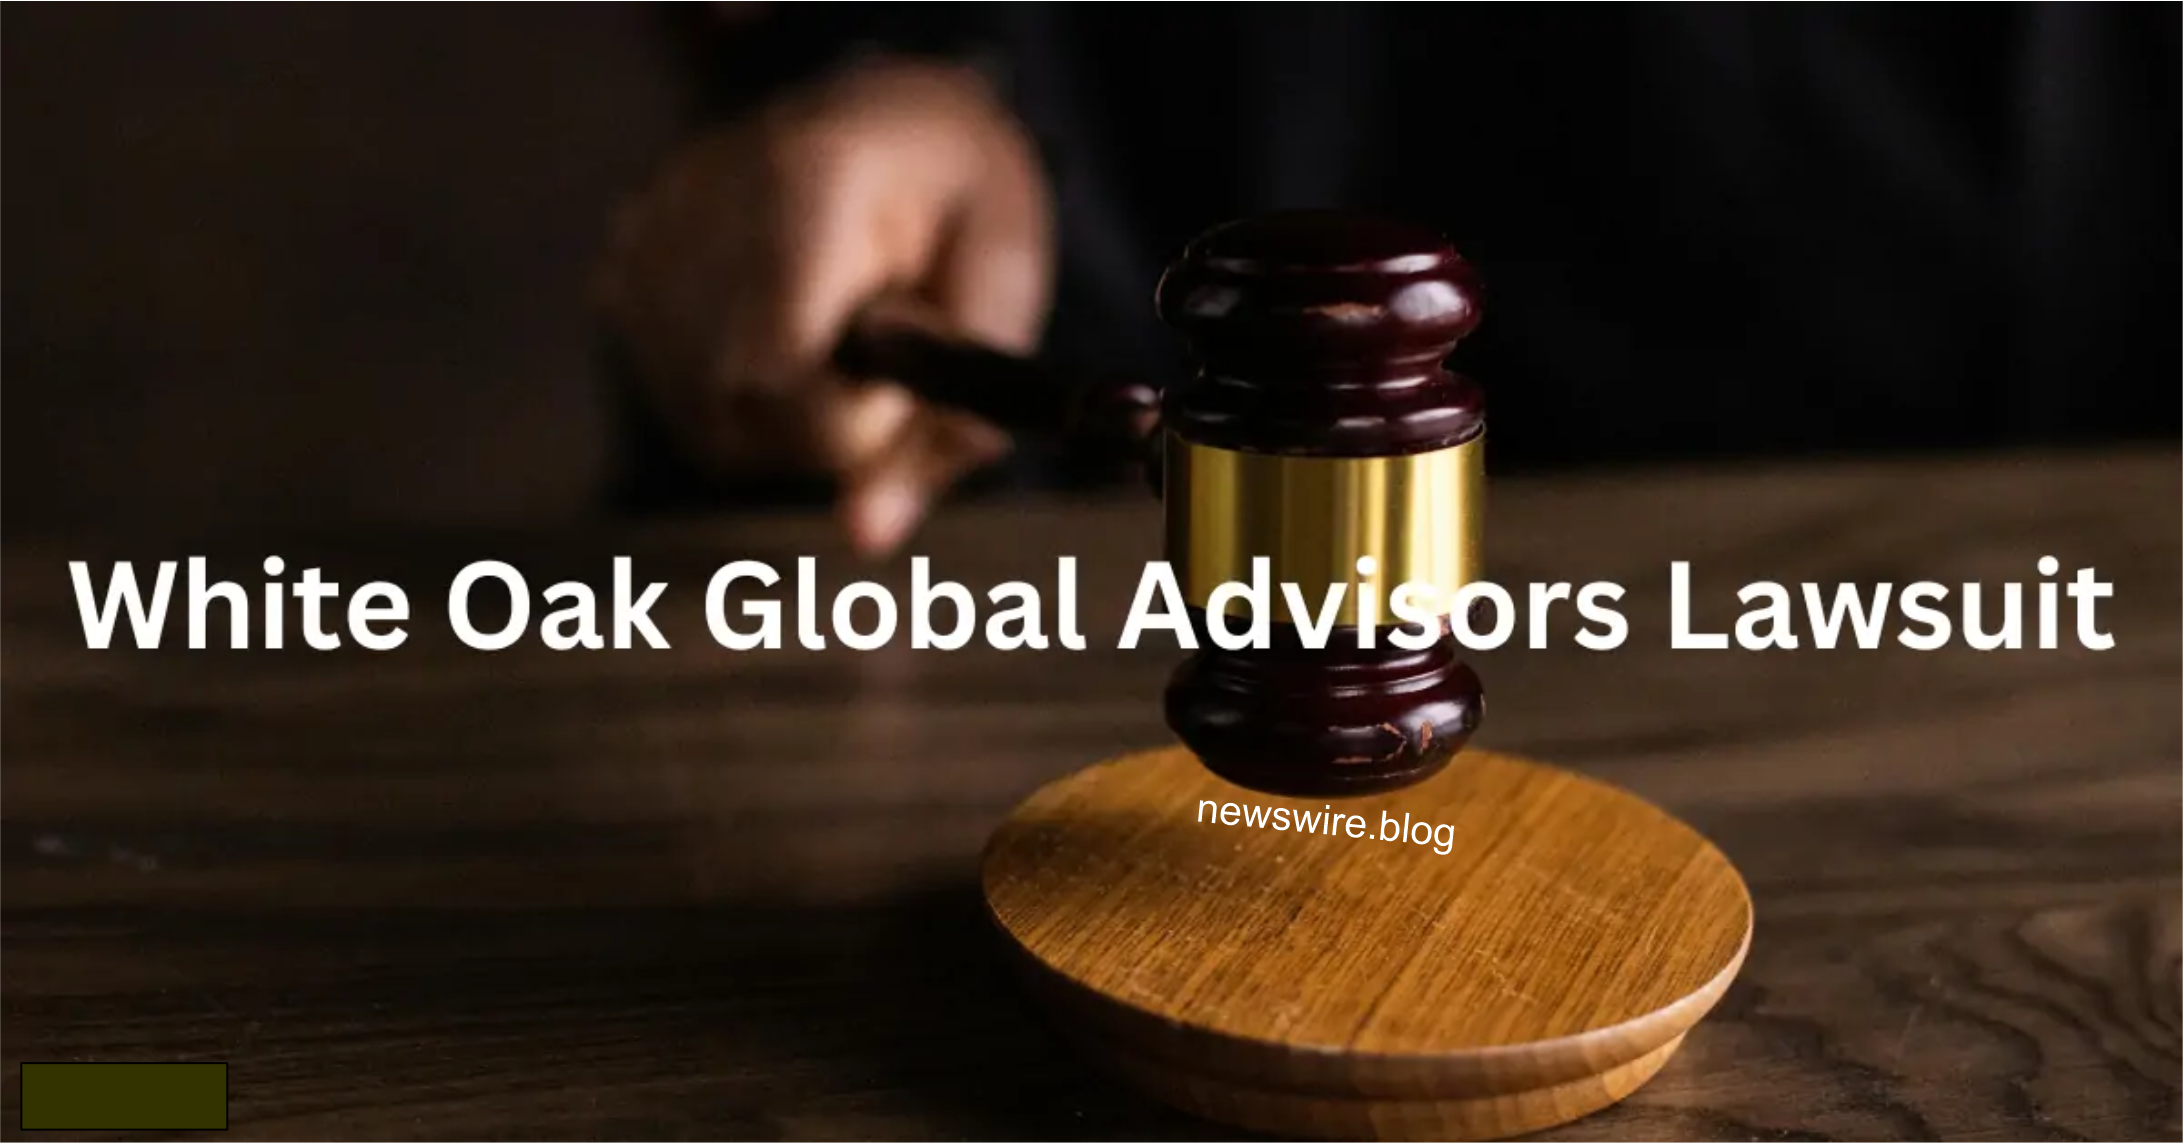 White Oak Global Advisors lawsuit